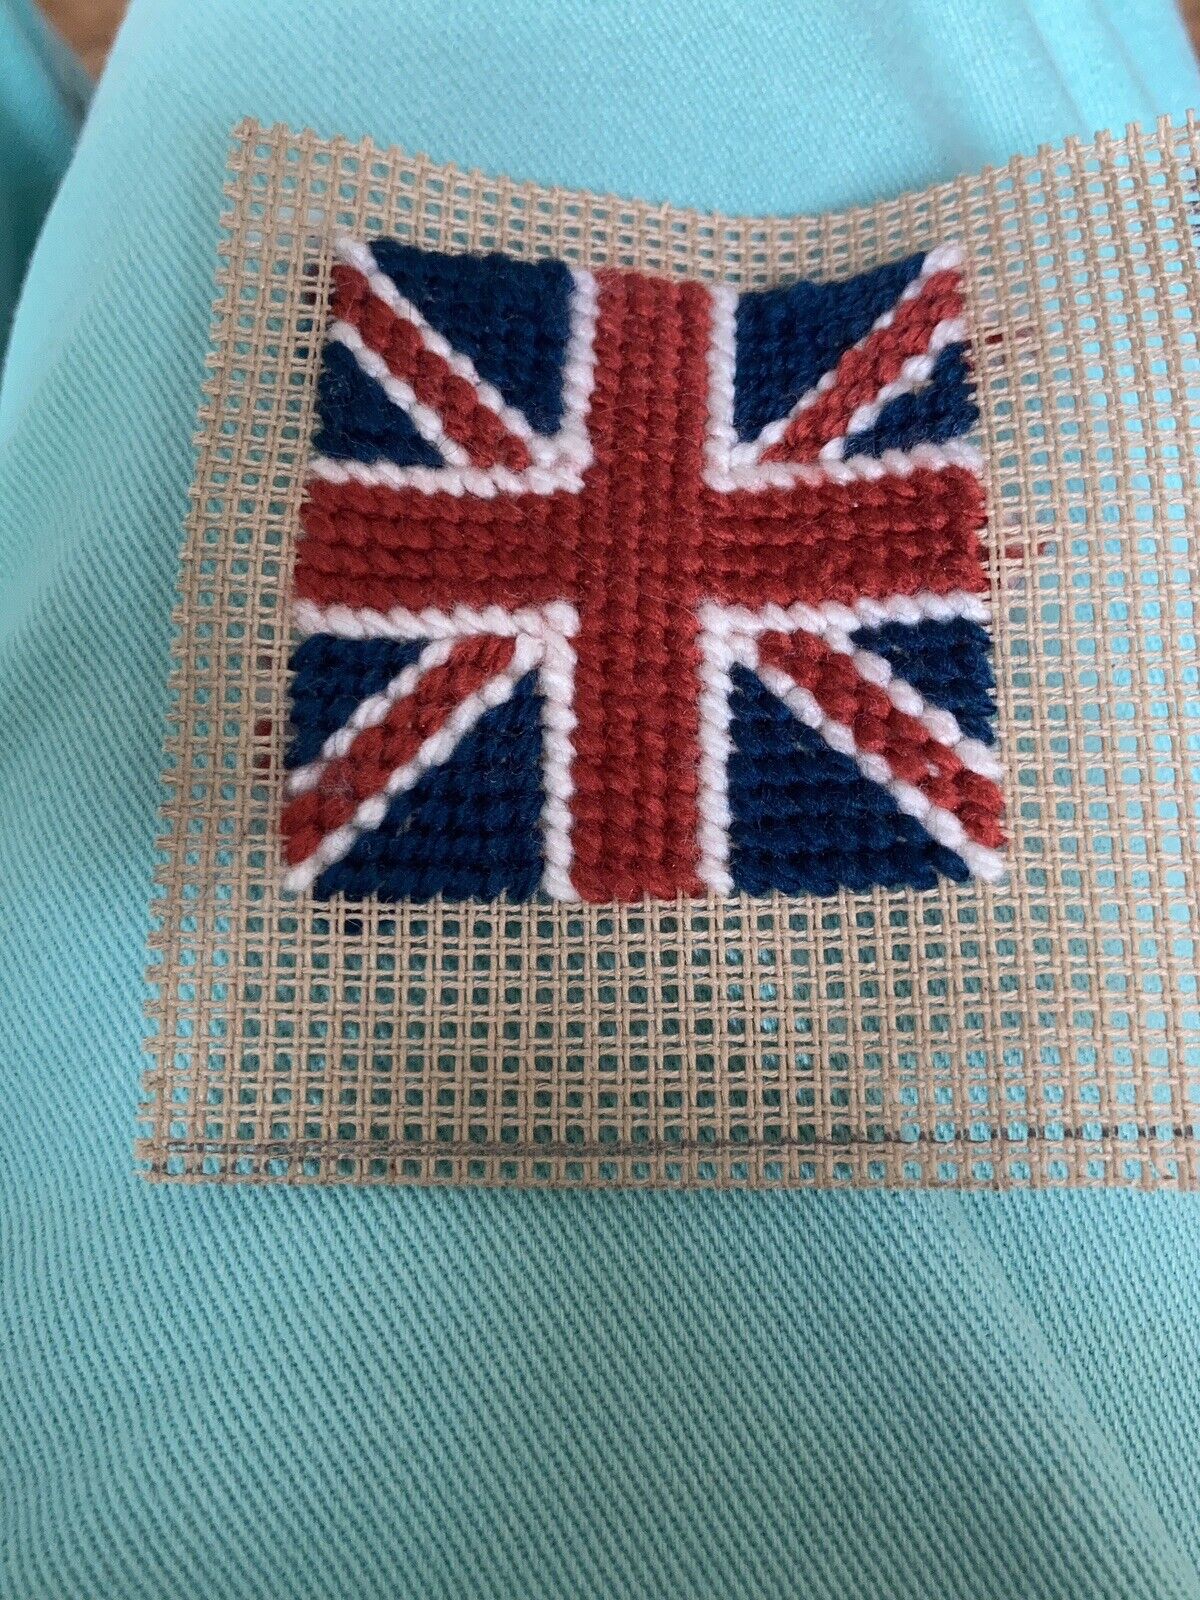 Mini Needlepoint Union Jack Flag  British